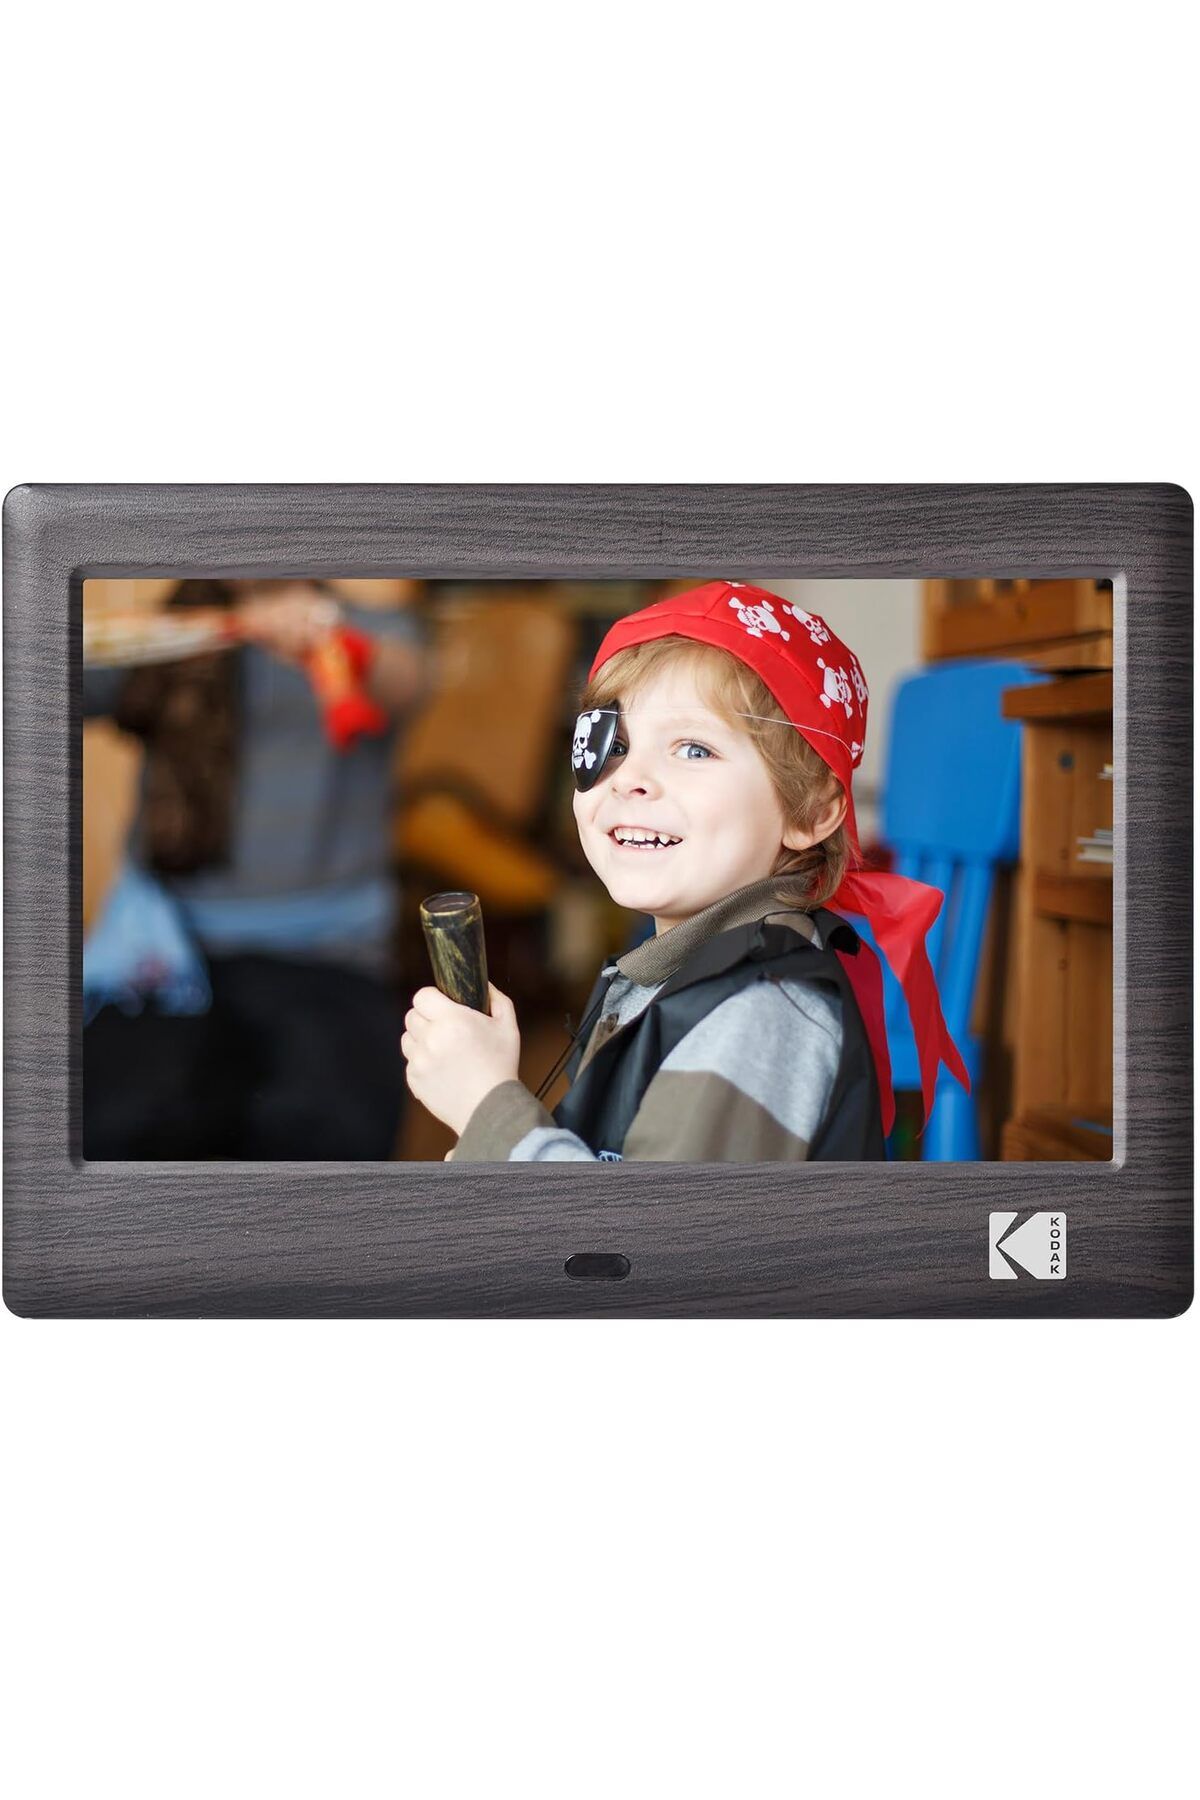 Kodak 10.1 inç WiFi Dijital Fotoğraf Çerçevesi - HD IPS Dokunmatik Ekran, Otomatik Döndürme